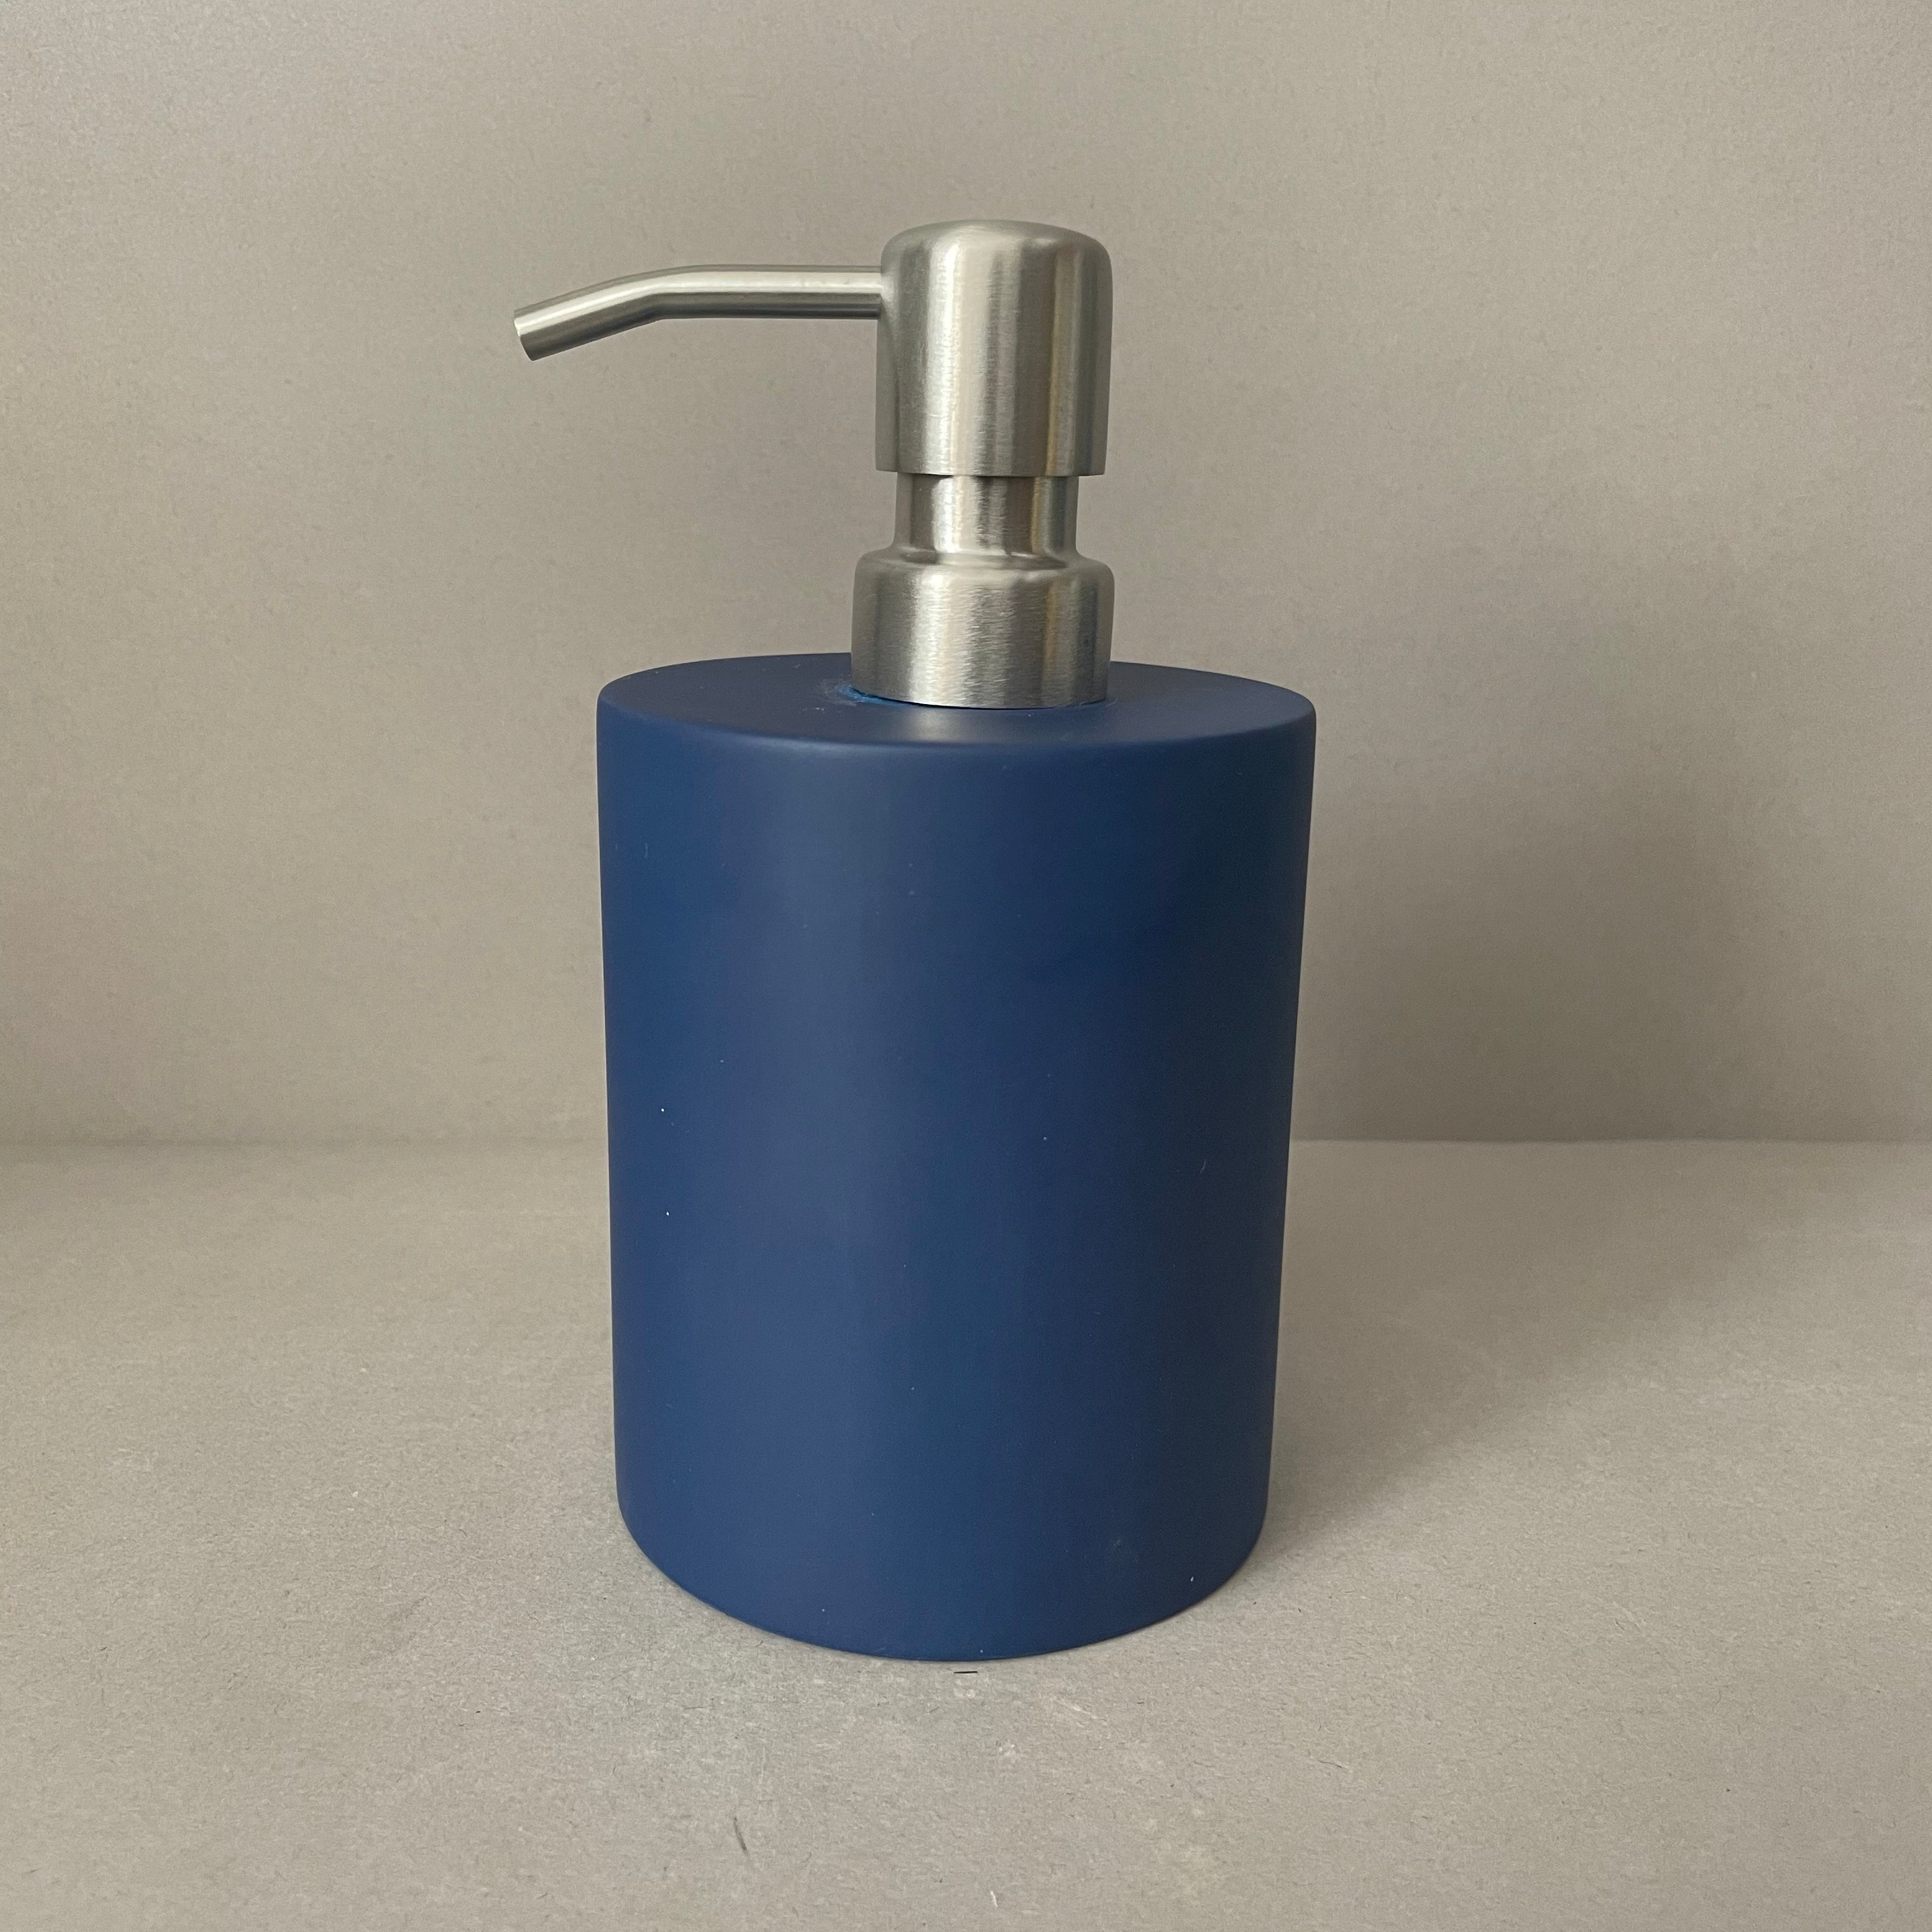 Blue Resin Soap Dispenser